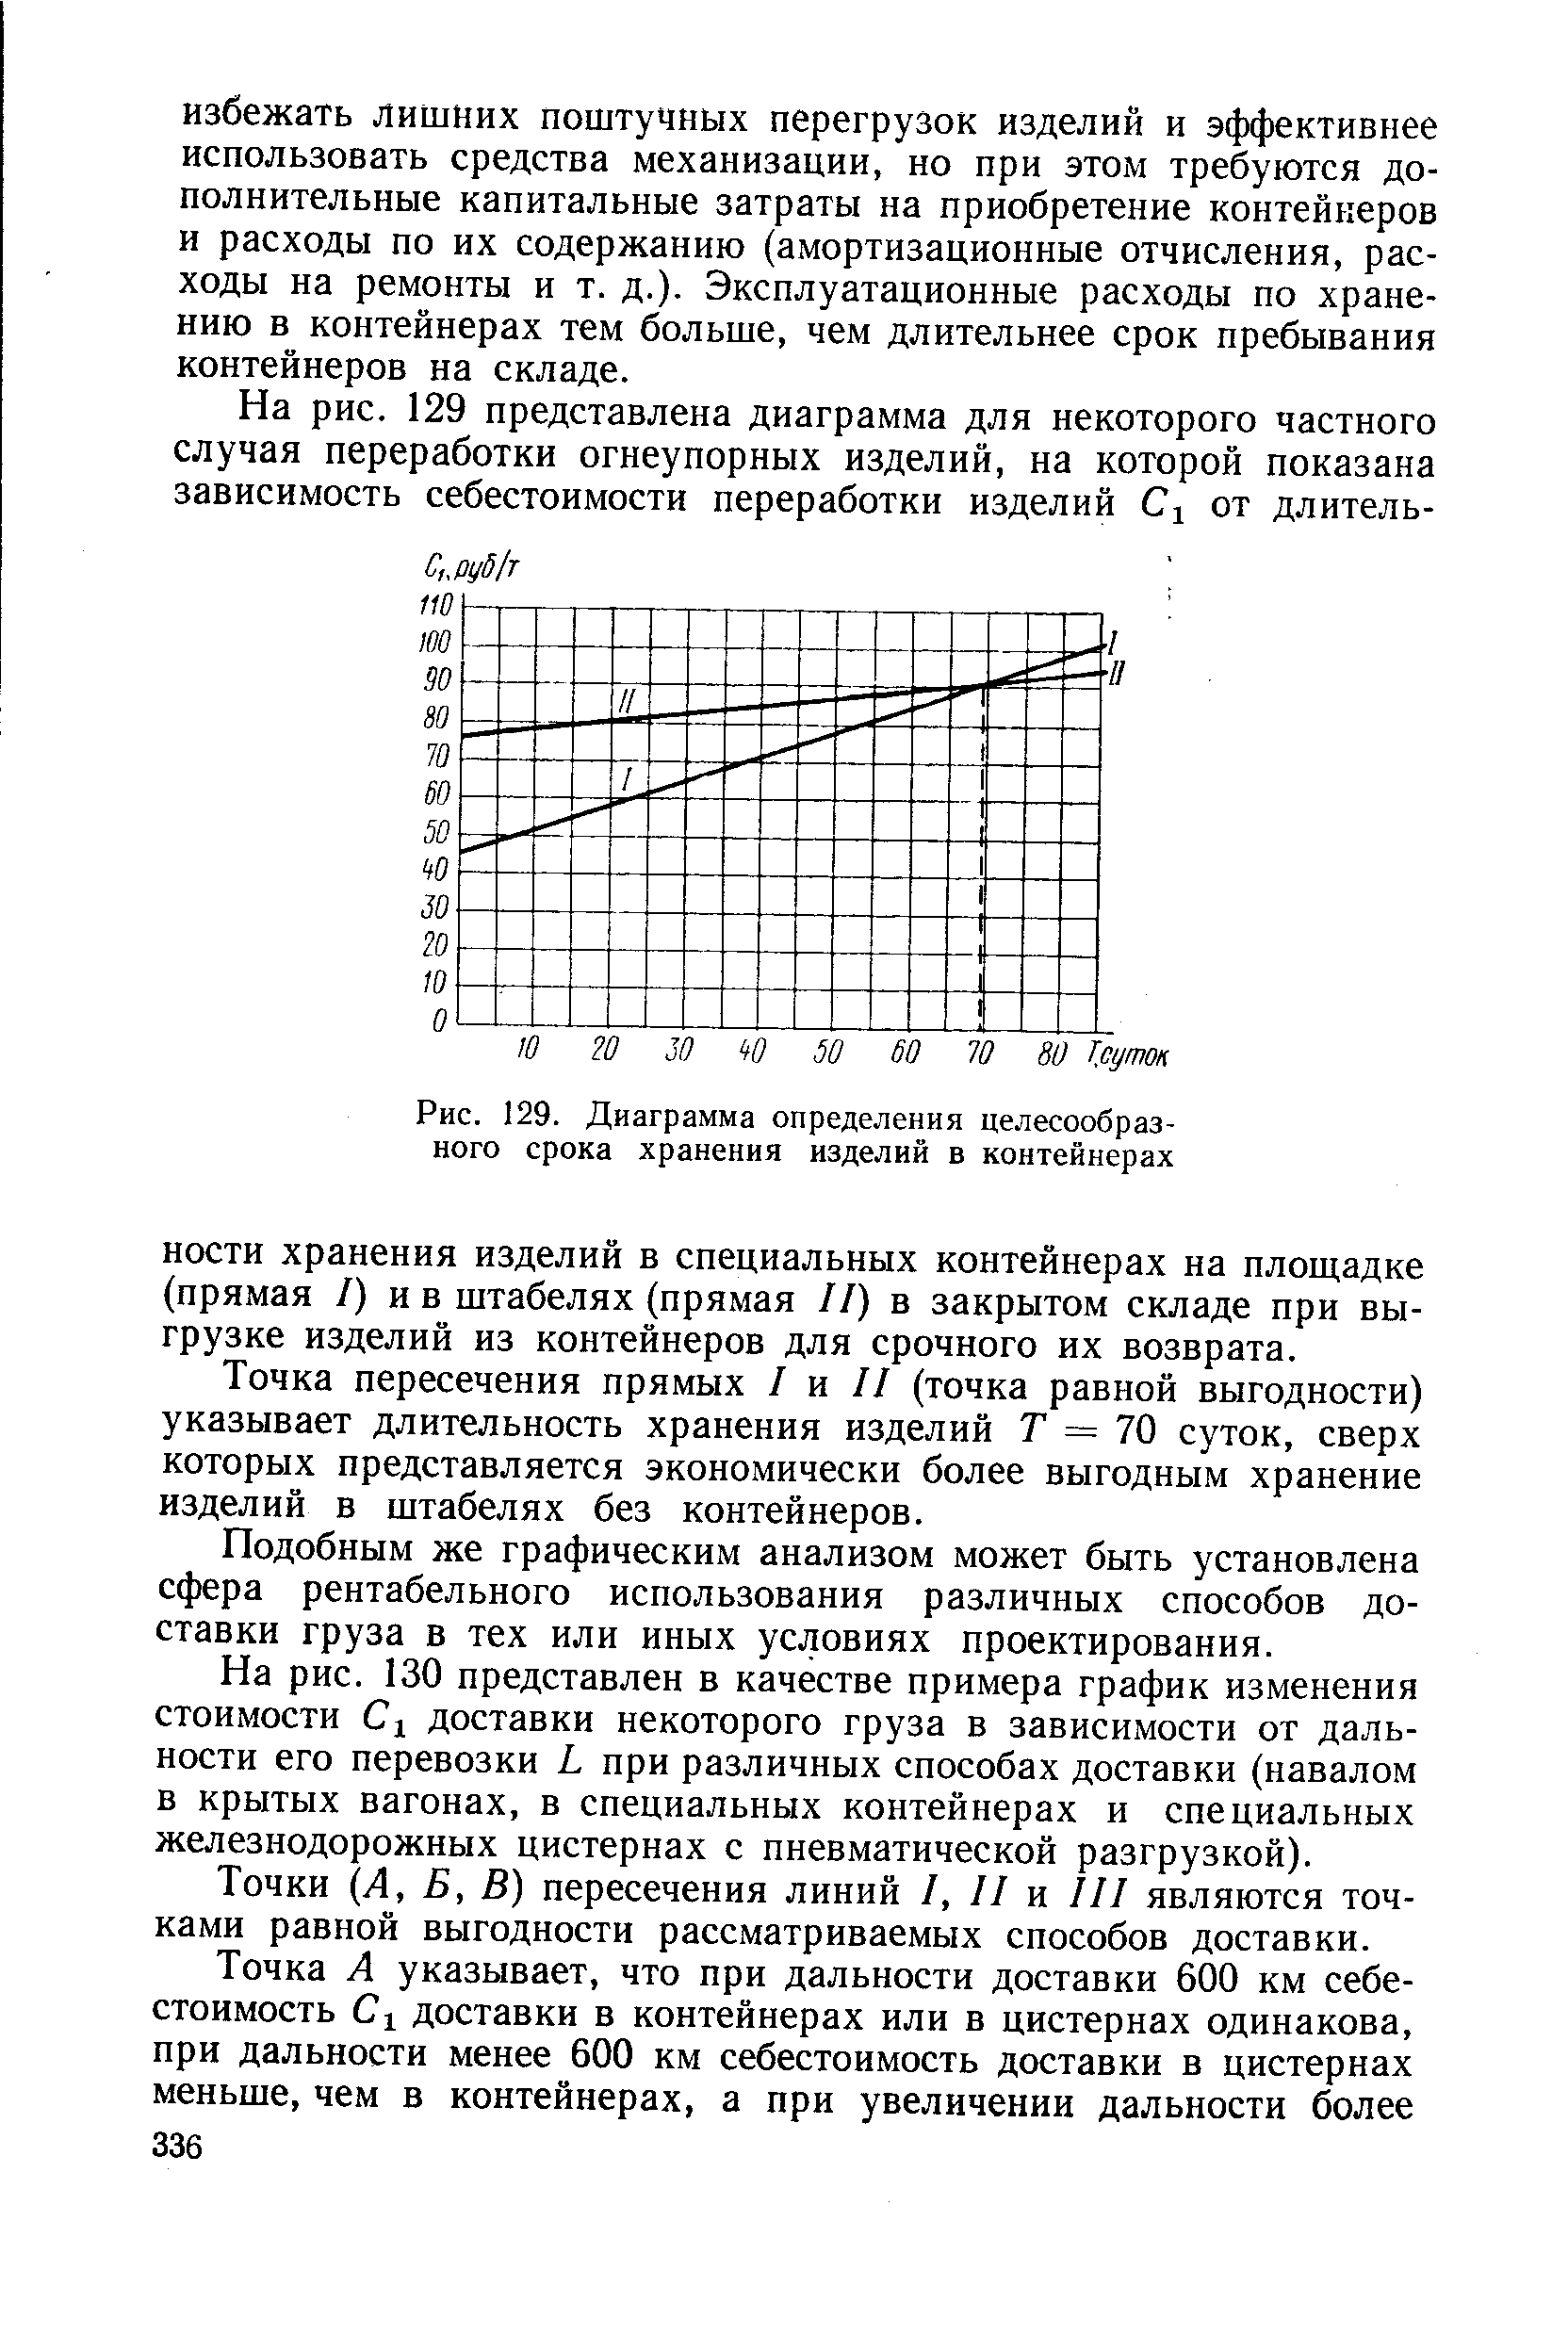 Рис. 129. Диаграмма определения целесообразного срока хранения изделий в контейнерах
